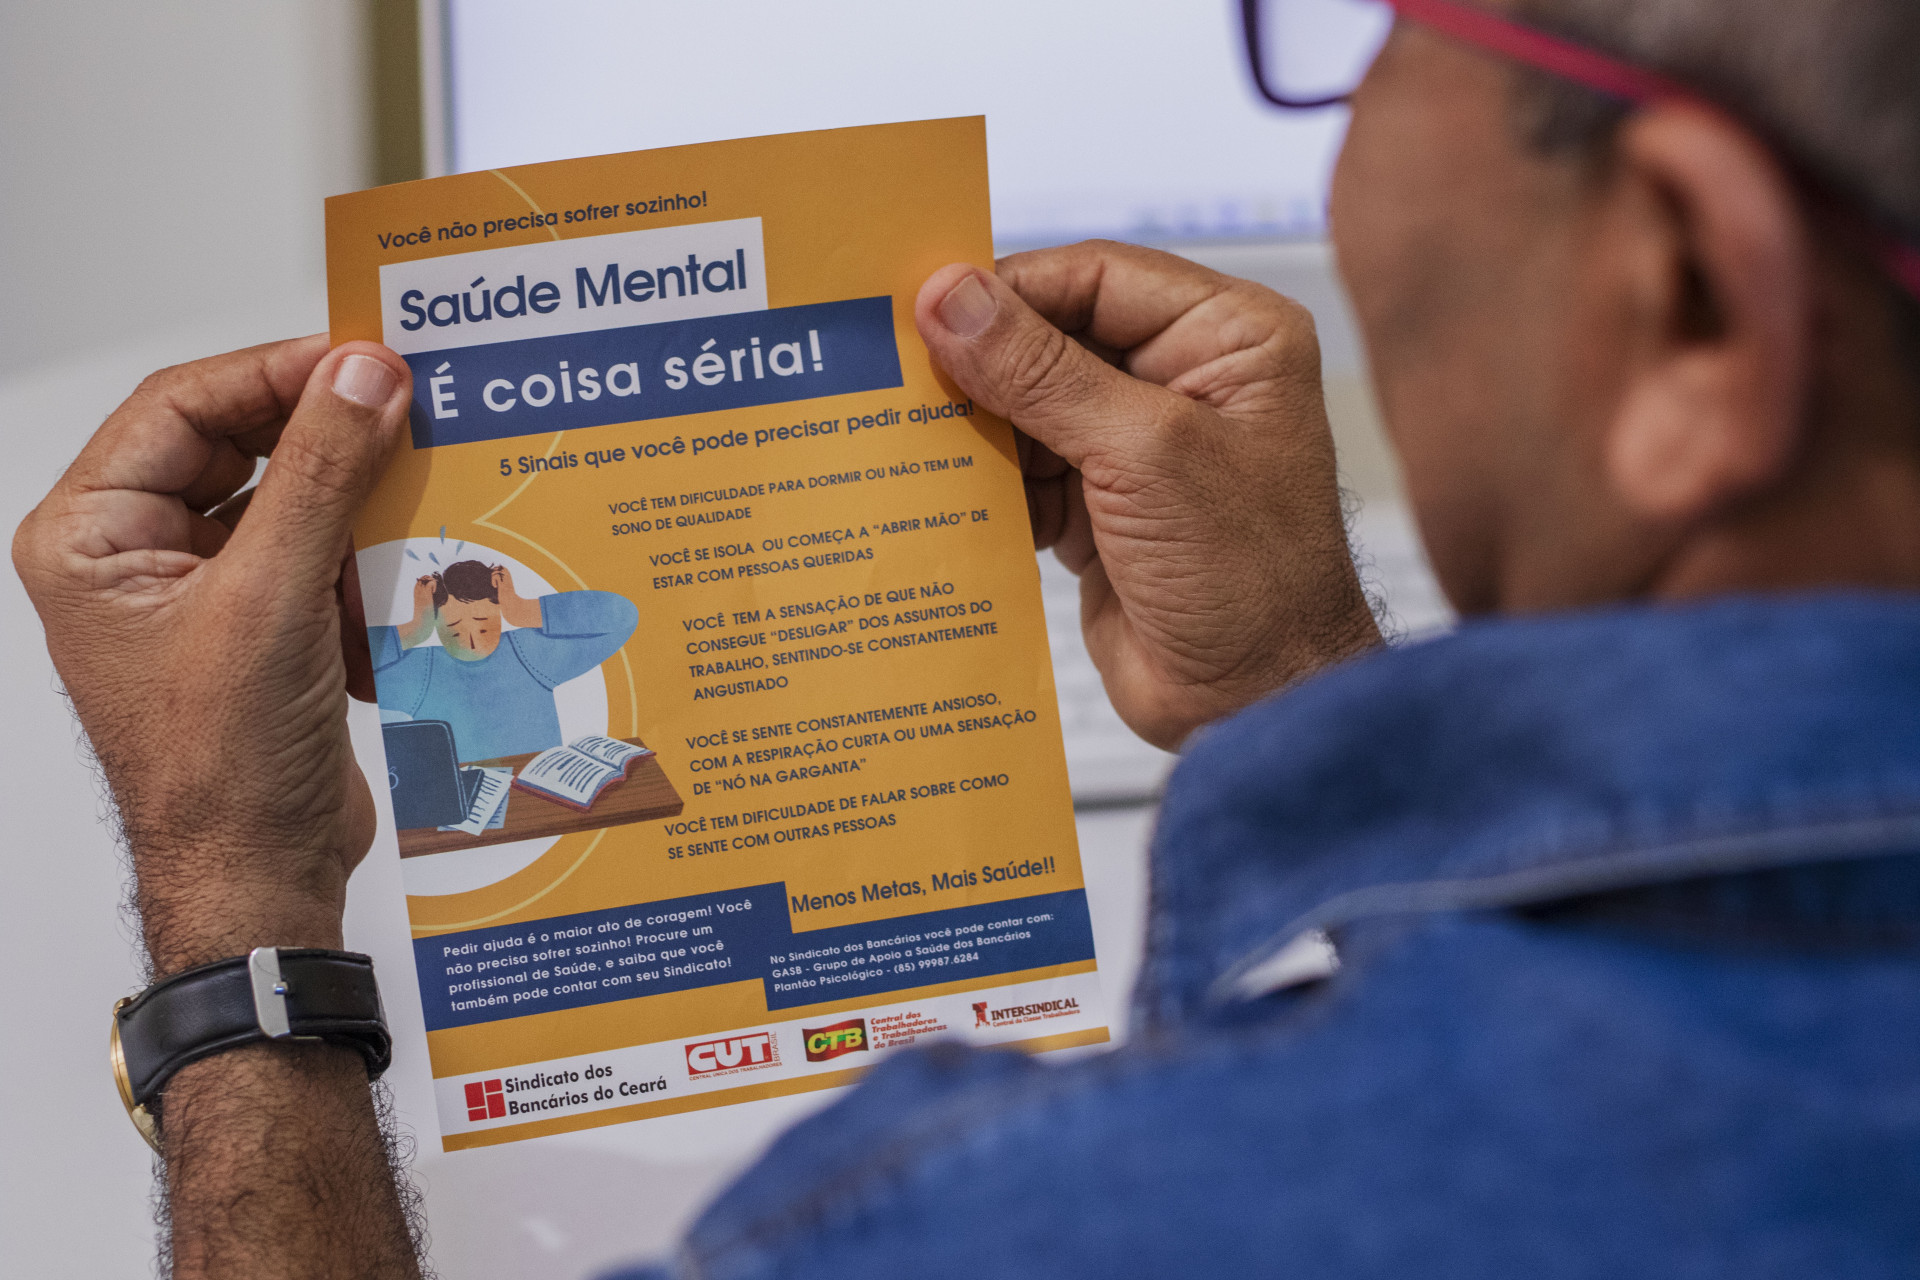 Brasil observa crescimento da quantidade de afastamentos por problemas psicológicos (Foto: FERNANDA BARROS)